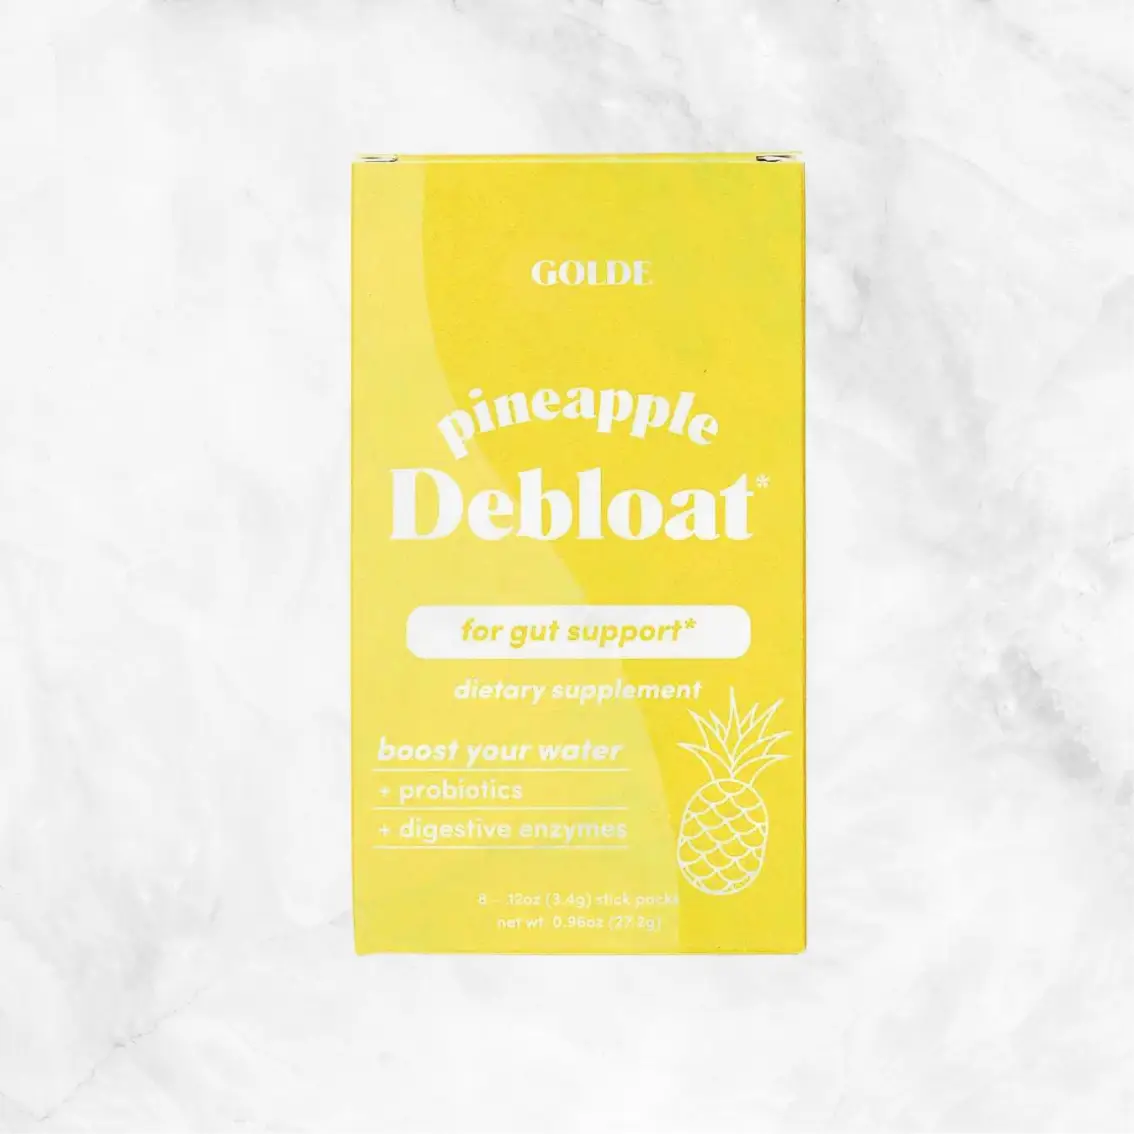  Pineapple Debloat Delivery